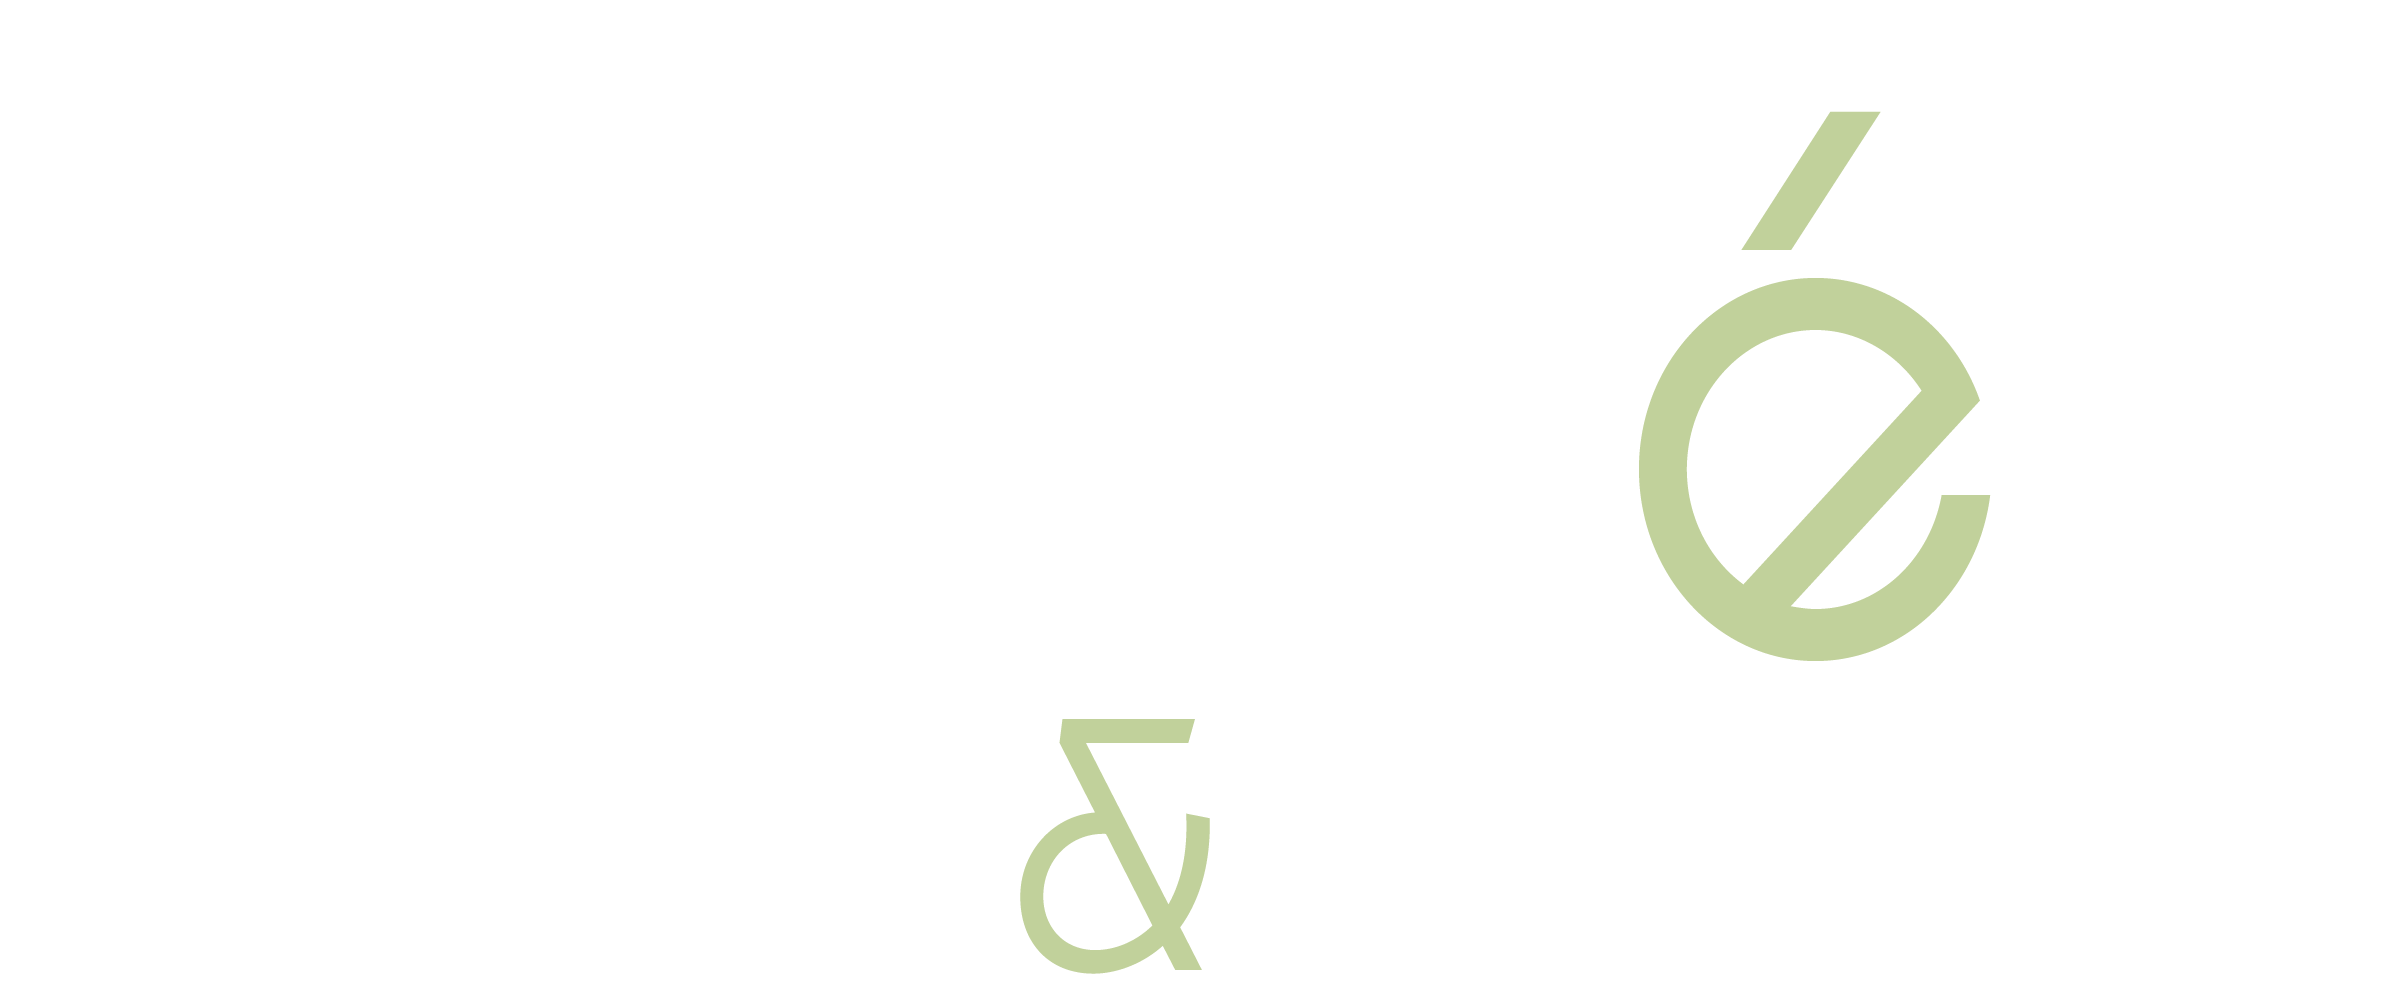 Andrén & Partner